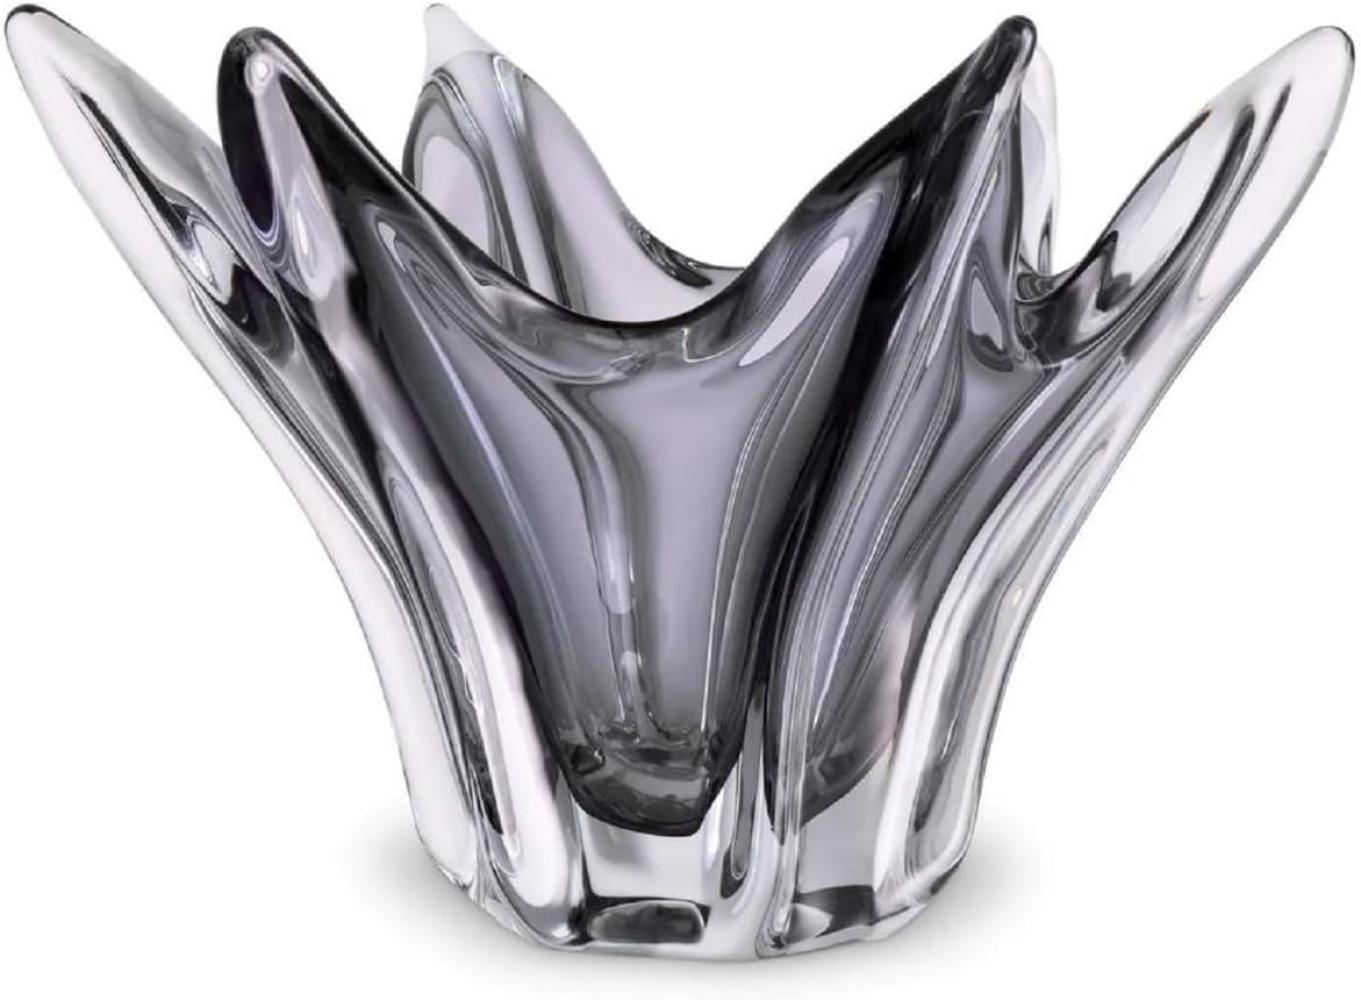 Casa Padrino Luxus Glas Schüssel Grau Ø 36,5 x H. 22,5 cm - Deko Schale aus mundgeblasenem Glas - Deko Accessoires - Luxus Qualität Bild 1